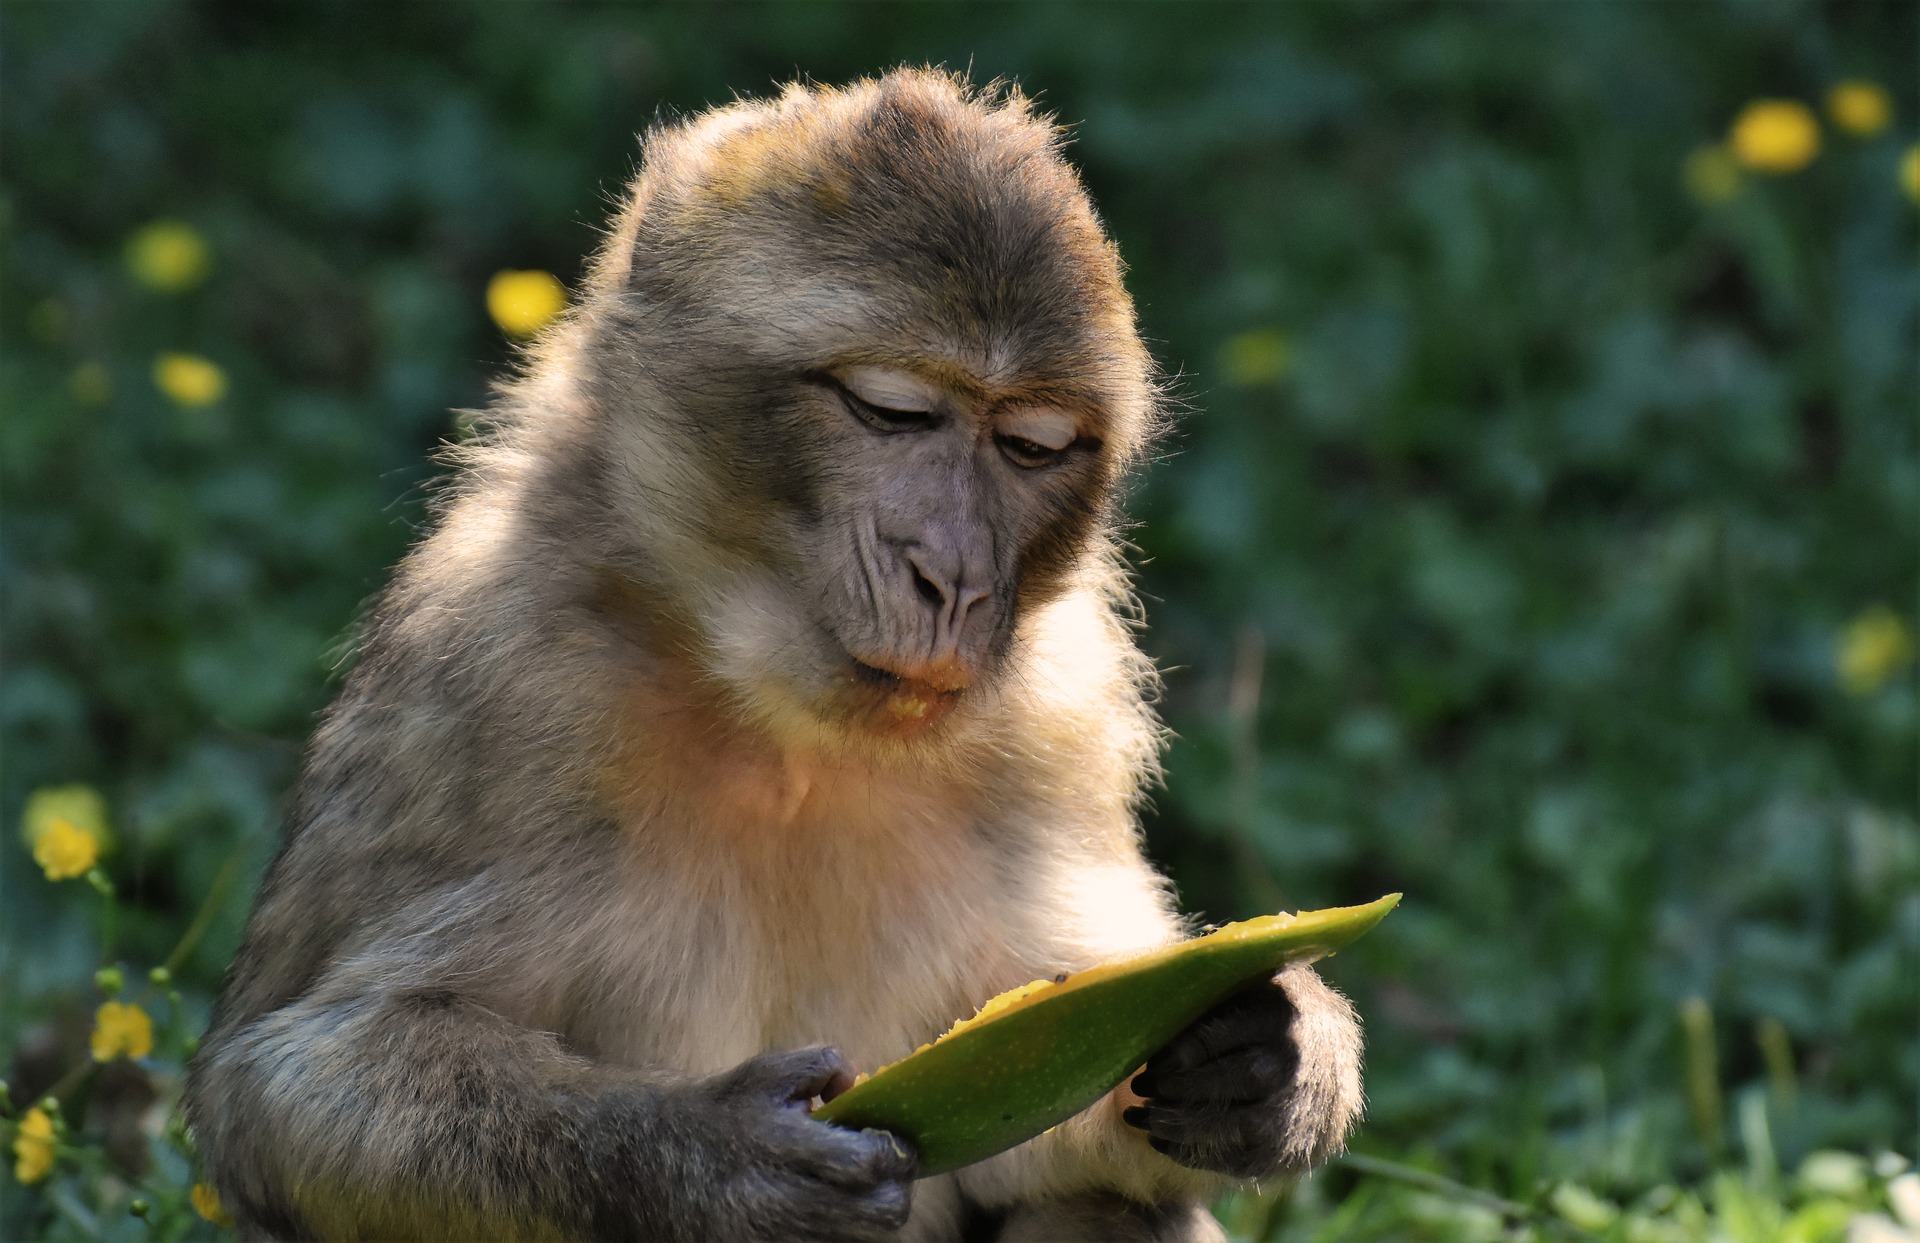 Hãy thưởng thức những bức ảnh đáng yêu của các chú khỉ vui nhộn và đáng yêu trong môi trường sống tự nhiên.